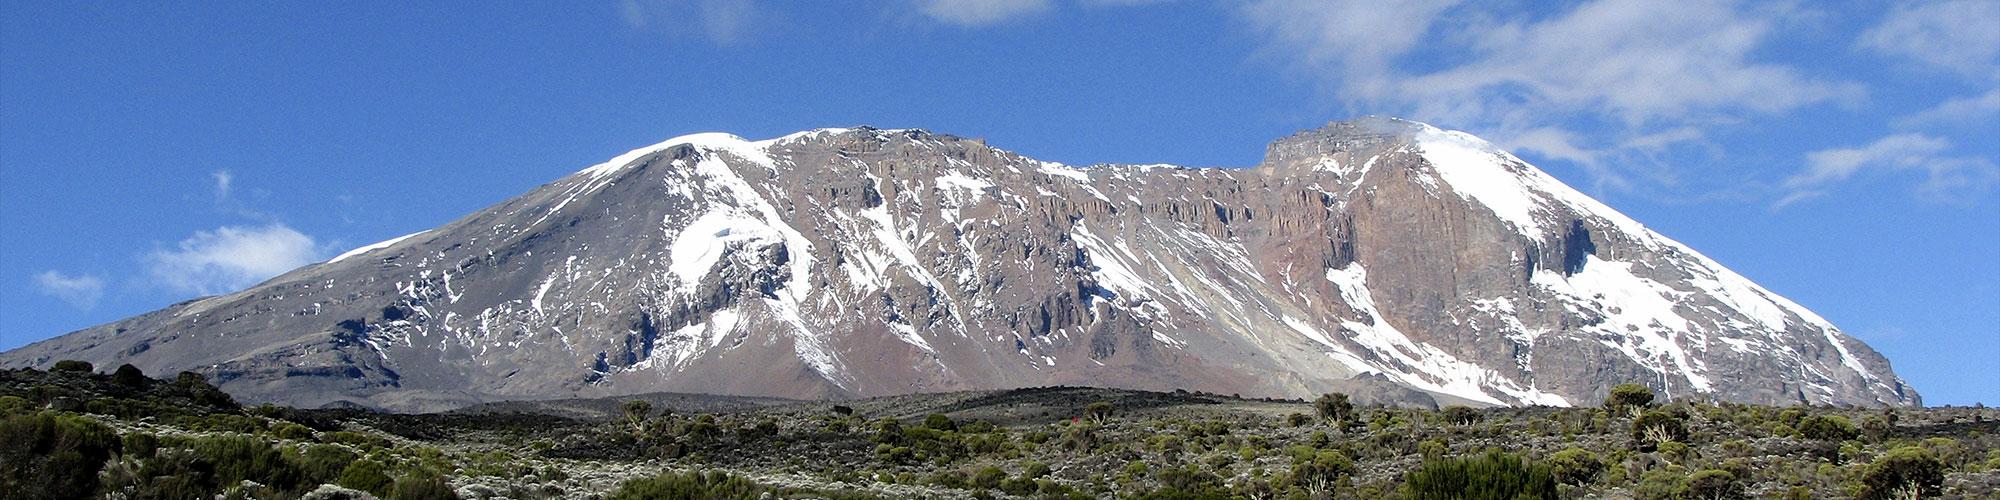 Mt. Kilimanjaro - The Machame Route